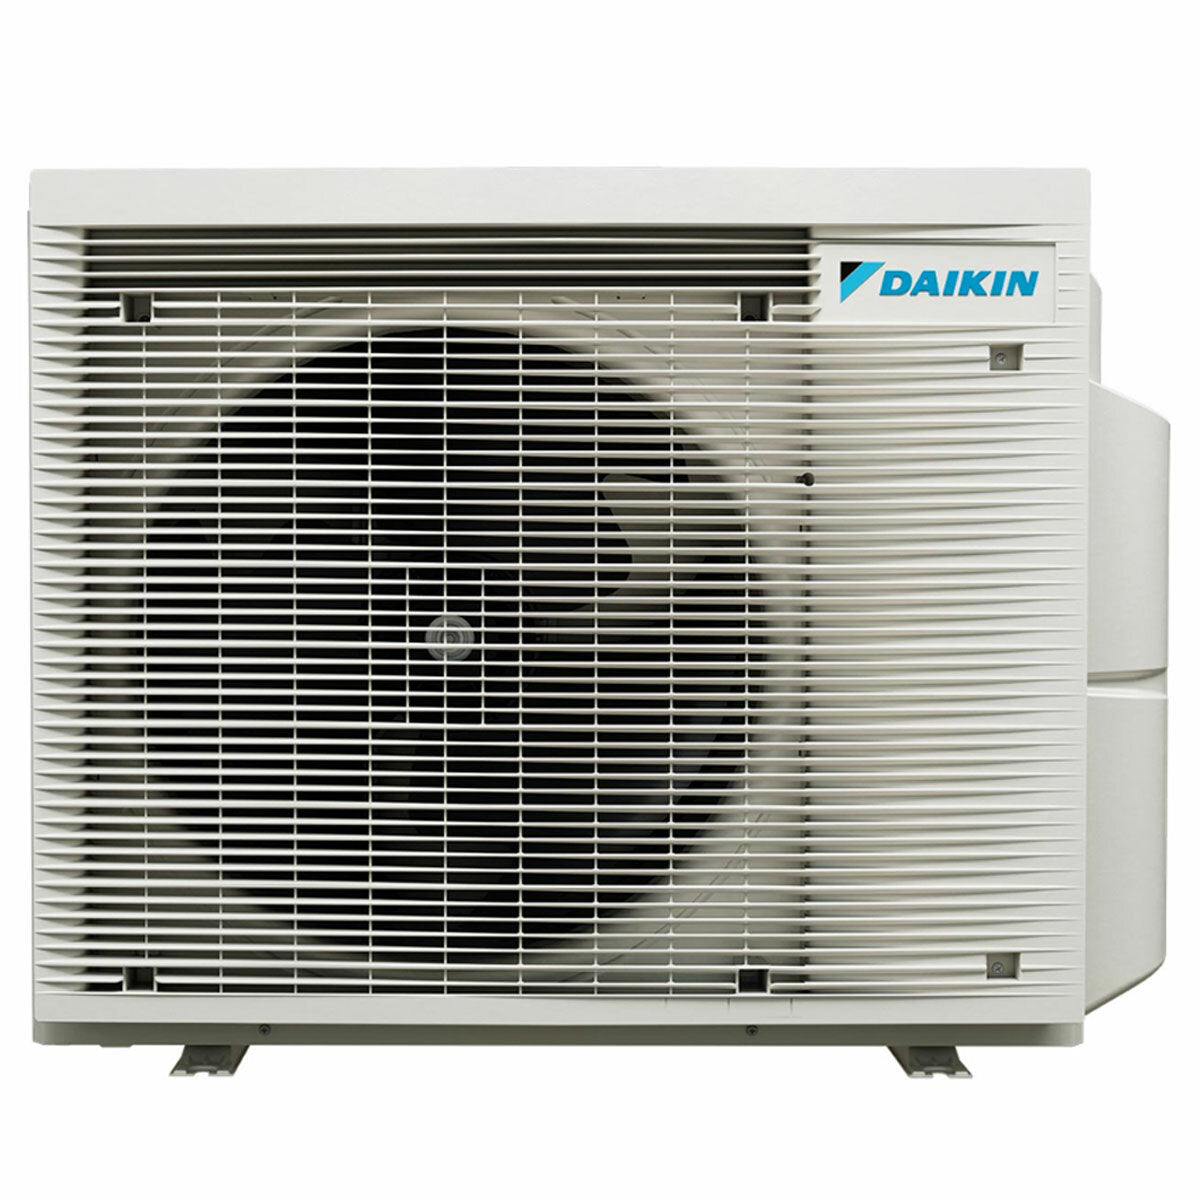 Daikin Emura 3 trial split air conditioner 9000+9000+15000 BTU inverter A+ wifi outdoor unit 6.8 kW Black